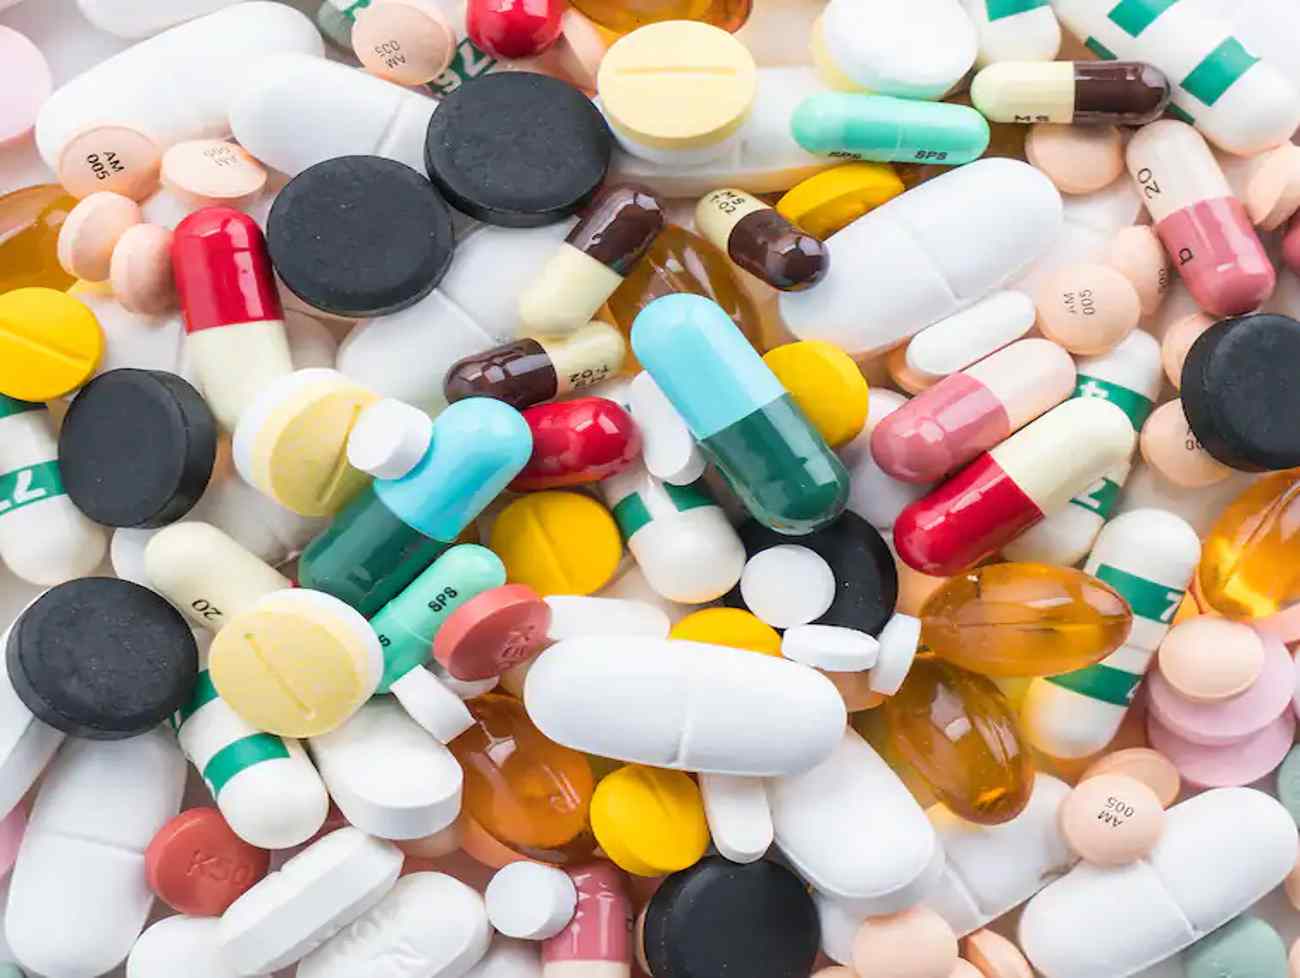 પેરાસિટામોલ સહિતની 52 દવાઓ ક્વોલિટી ટેસ્ટમાં ફેલ